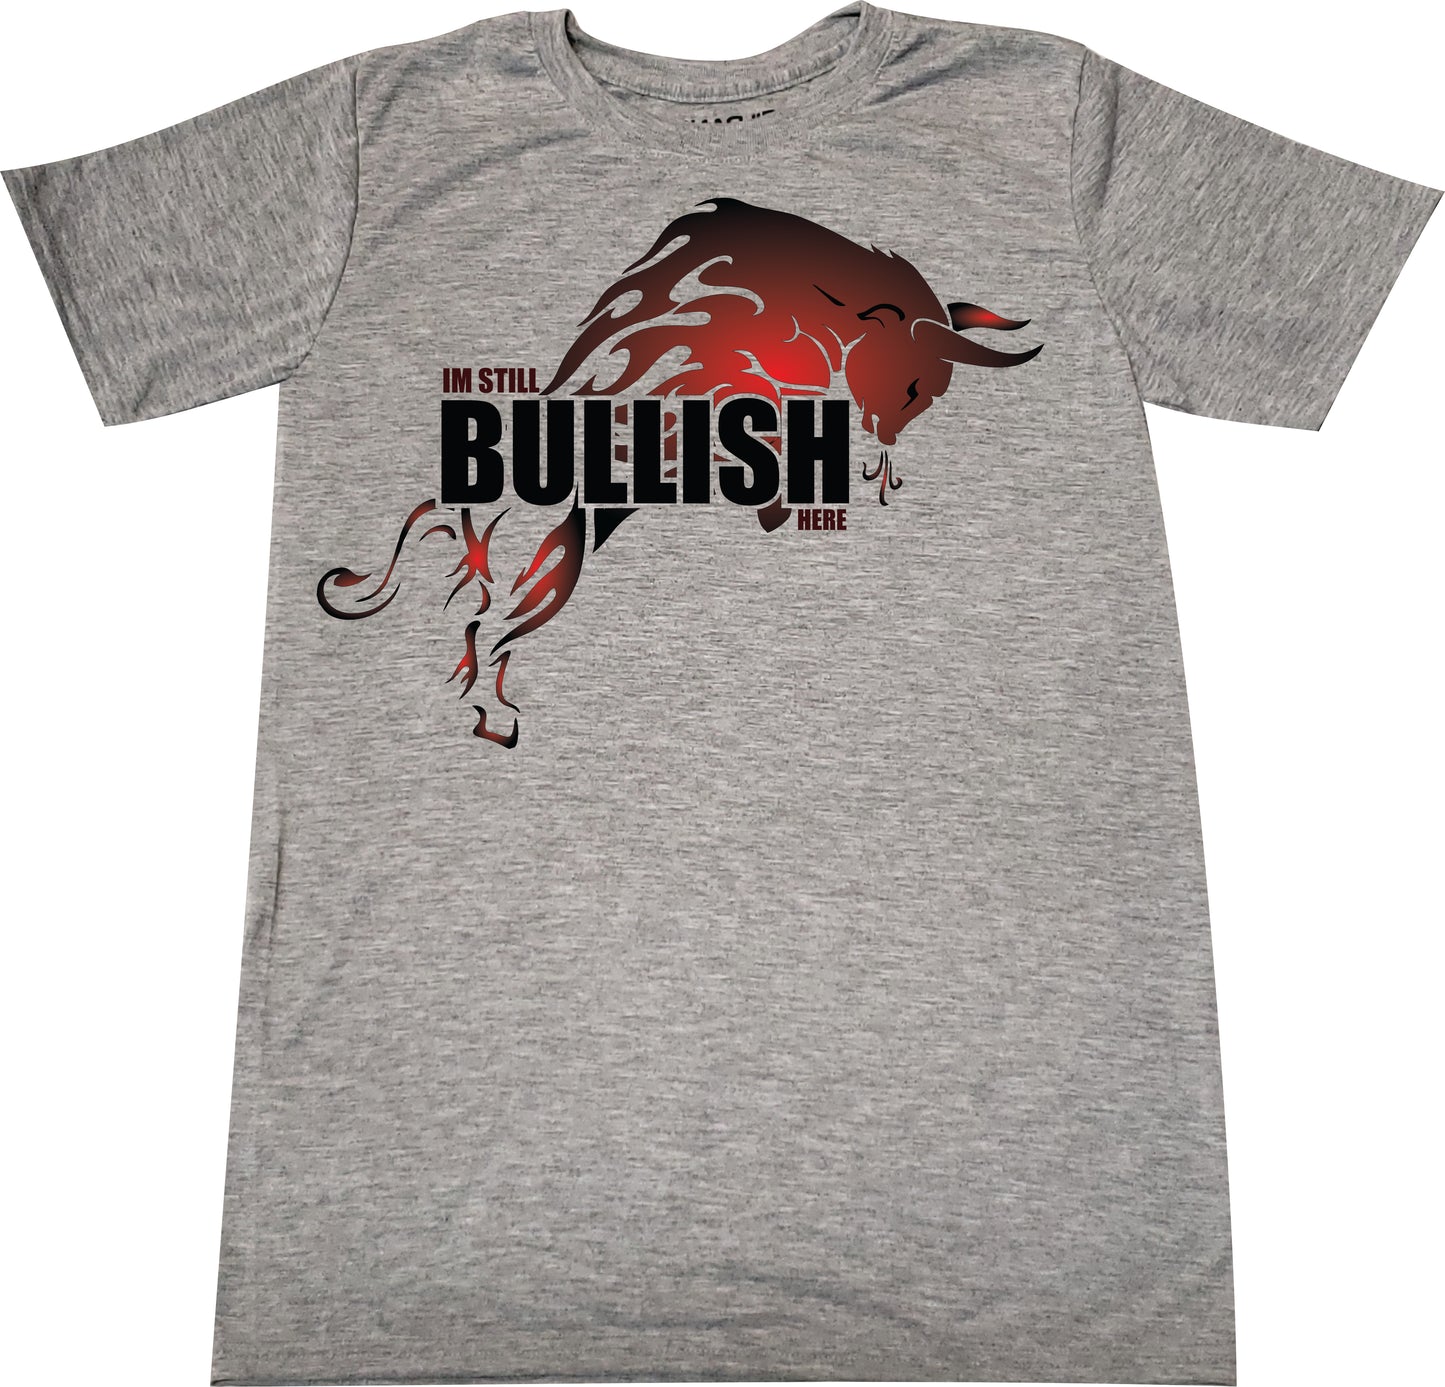 Bullish tshirt